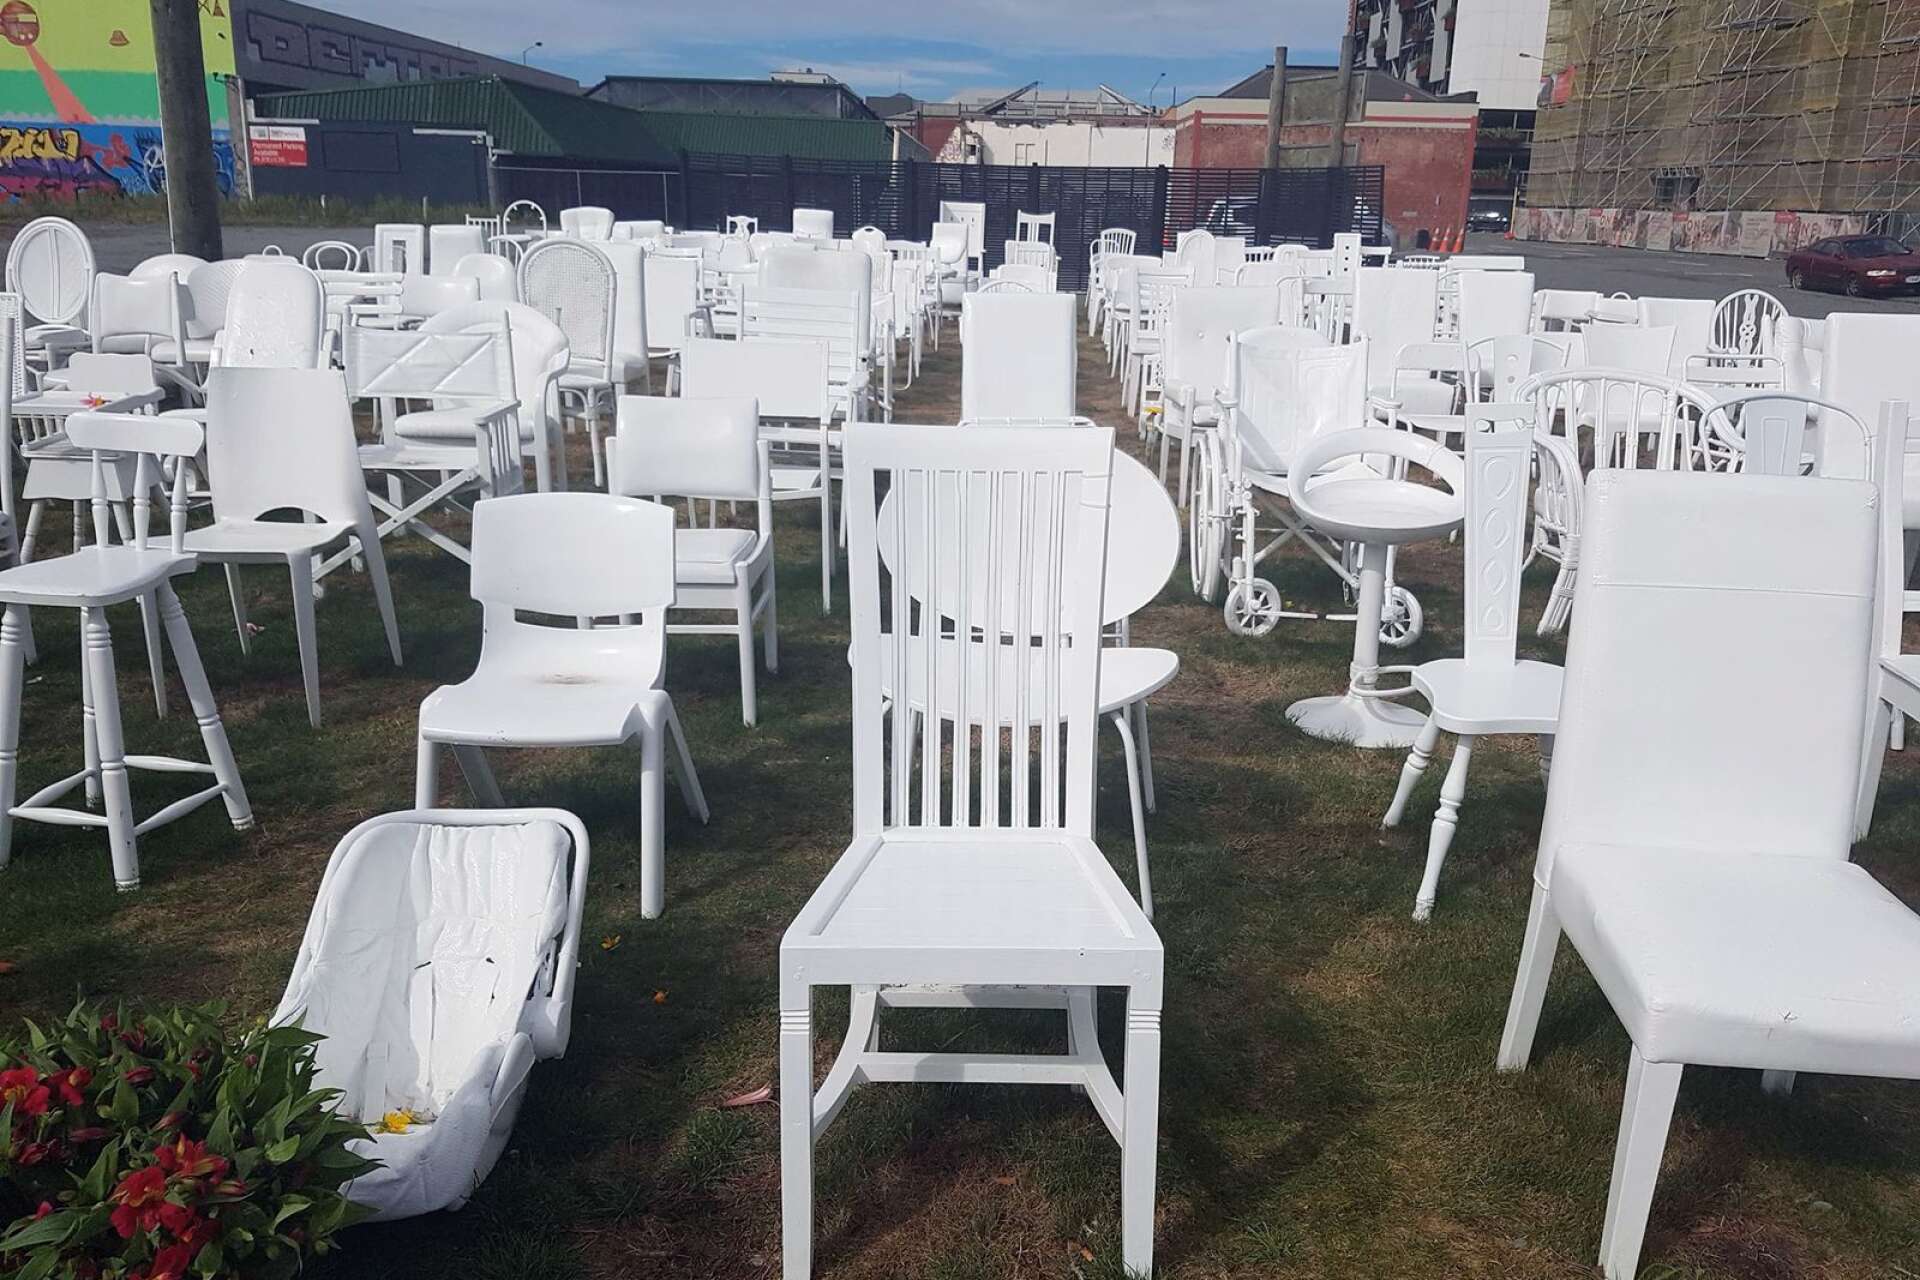 Nya Zeeland har inte drabbats av attentat tidigare, men väl av jordbävningar. Dessa vita stolar minner om det.